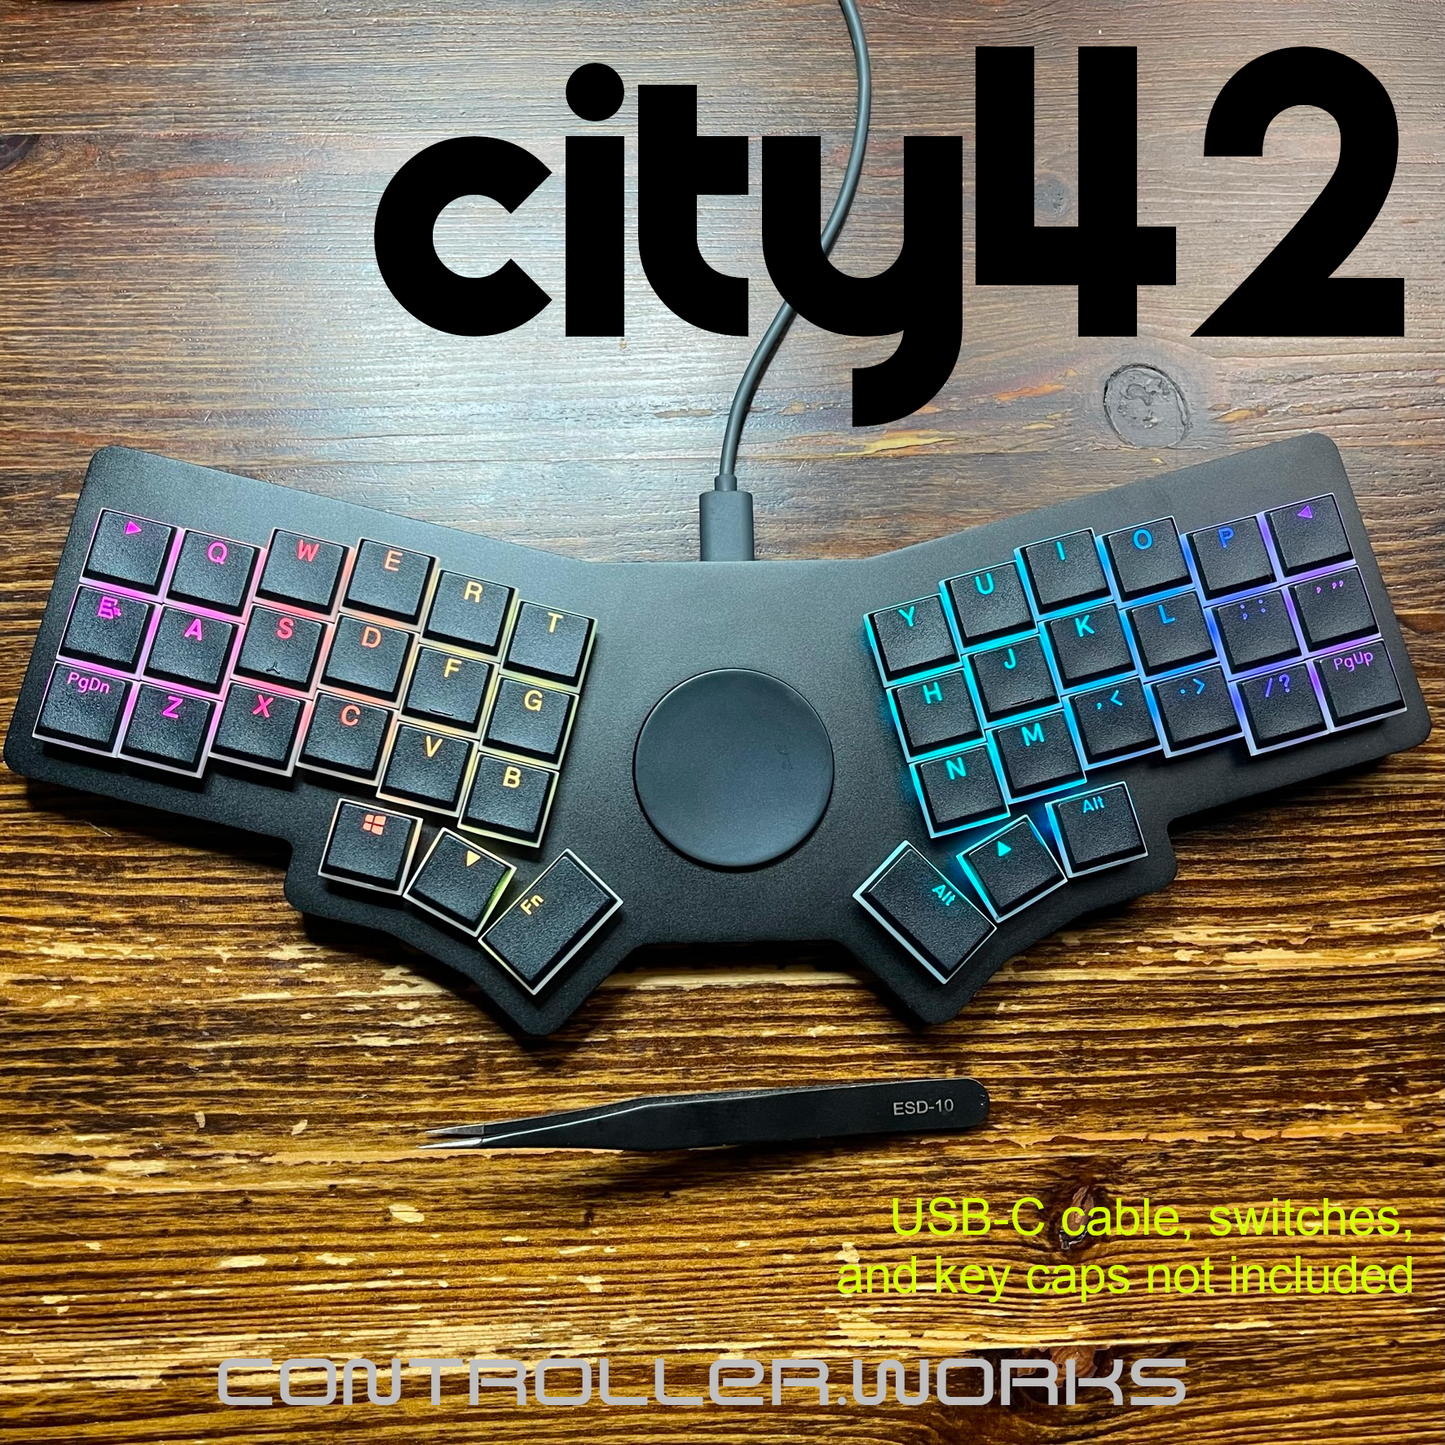 city42 Prototypes